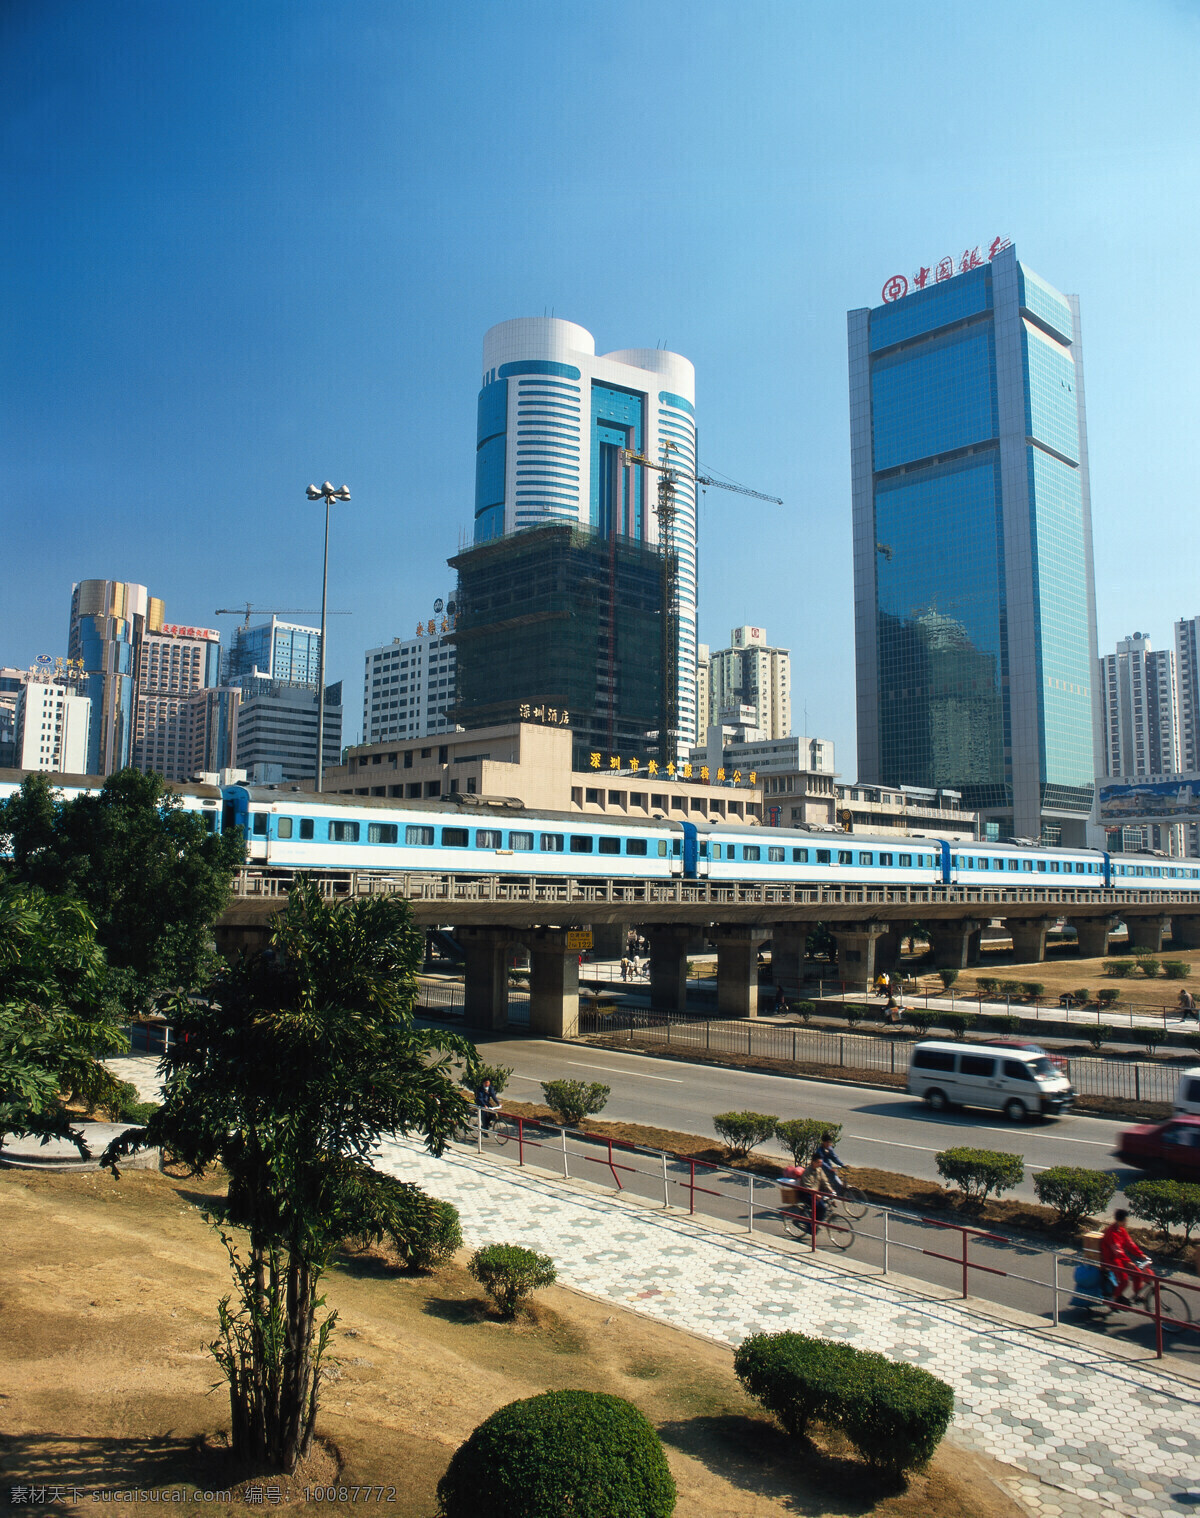 中国银行 建筑 大厦 城市风景 公路 绿化 植物 建筑物 天空 蓝天 风景摄影 城市摄像 高楼大厦 城市风光 环境家居